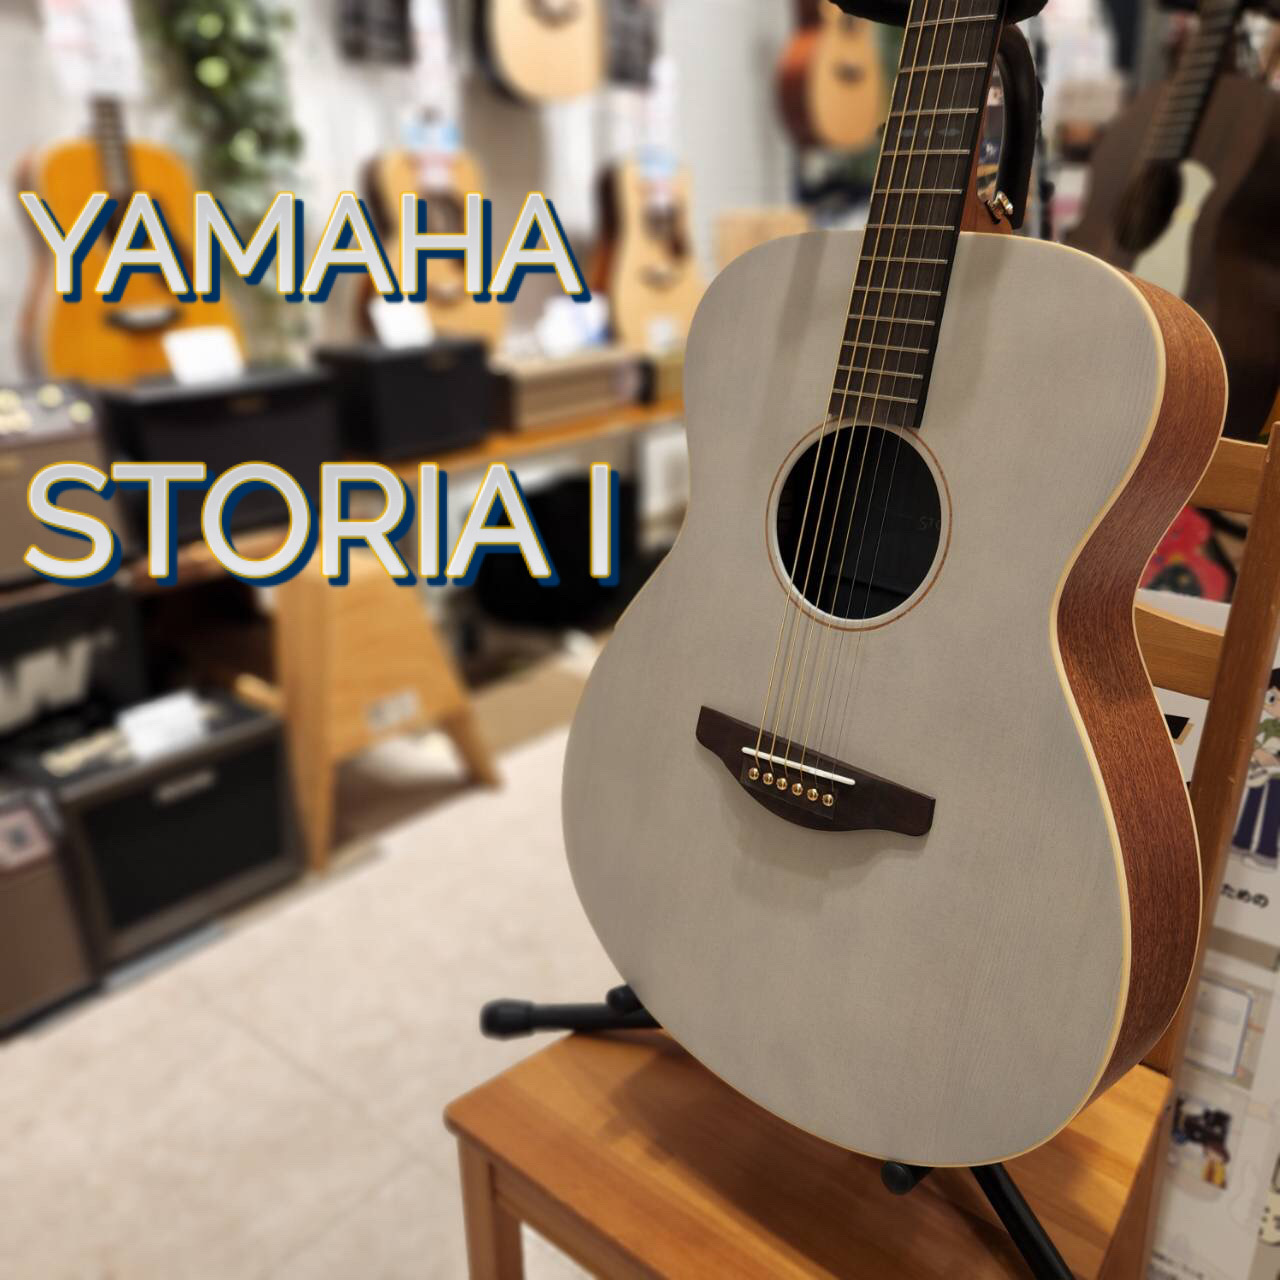 YAMAHA STORIA Ⅰ アコースティックギター